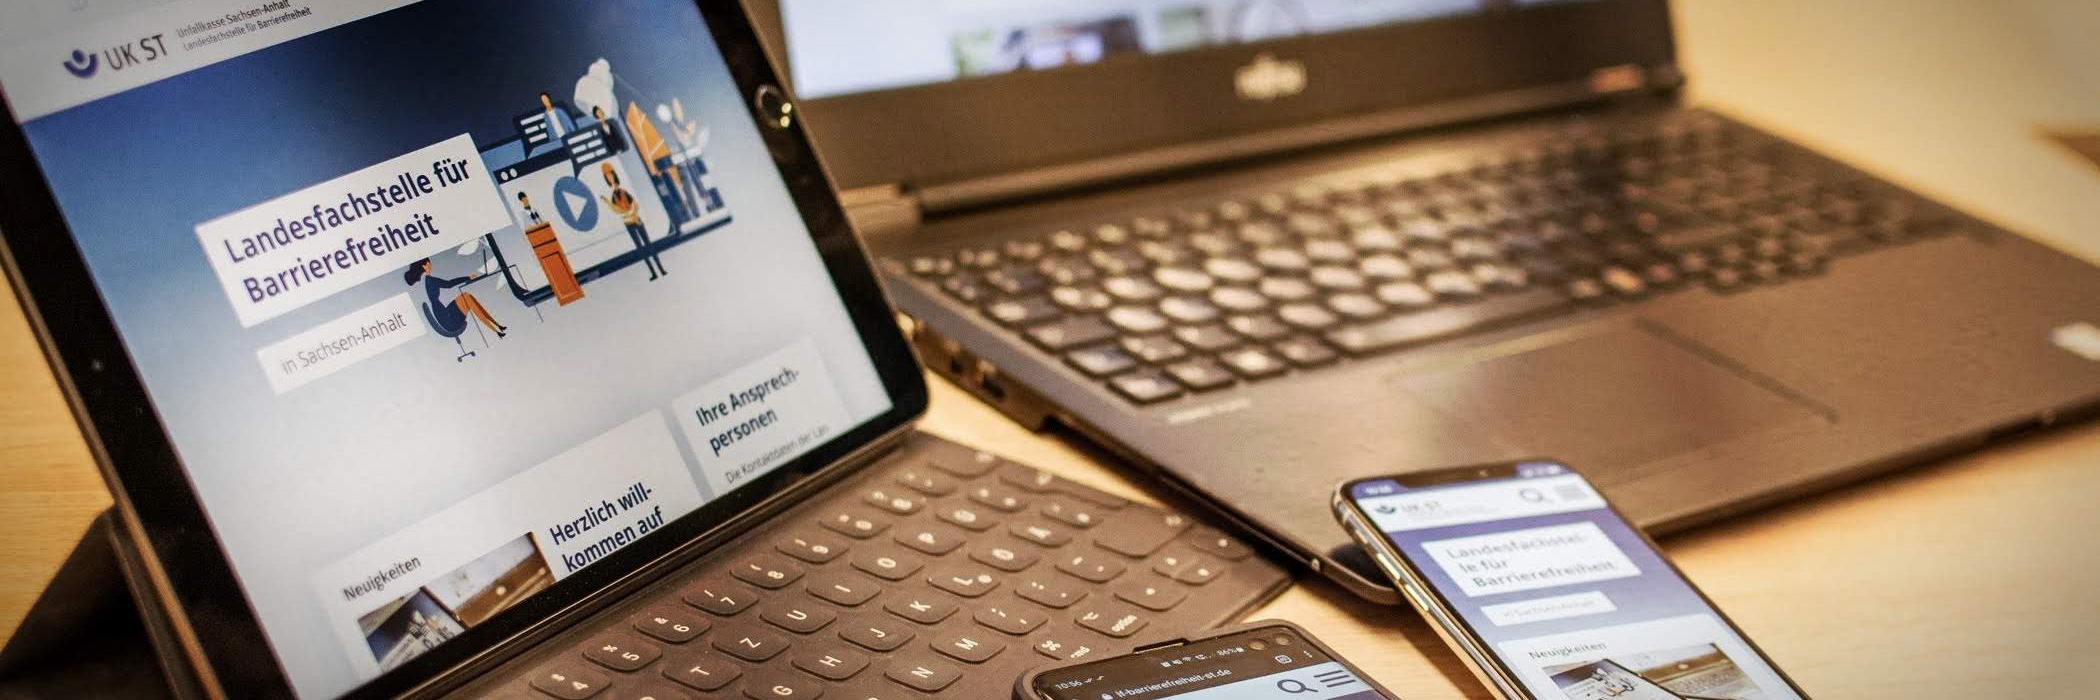 Tablet, Laptop und zwei Smartphones zeigen die Webseite der Landesfachstelle für Barrierefreiheit Sachsen-Anhalt